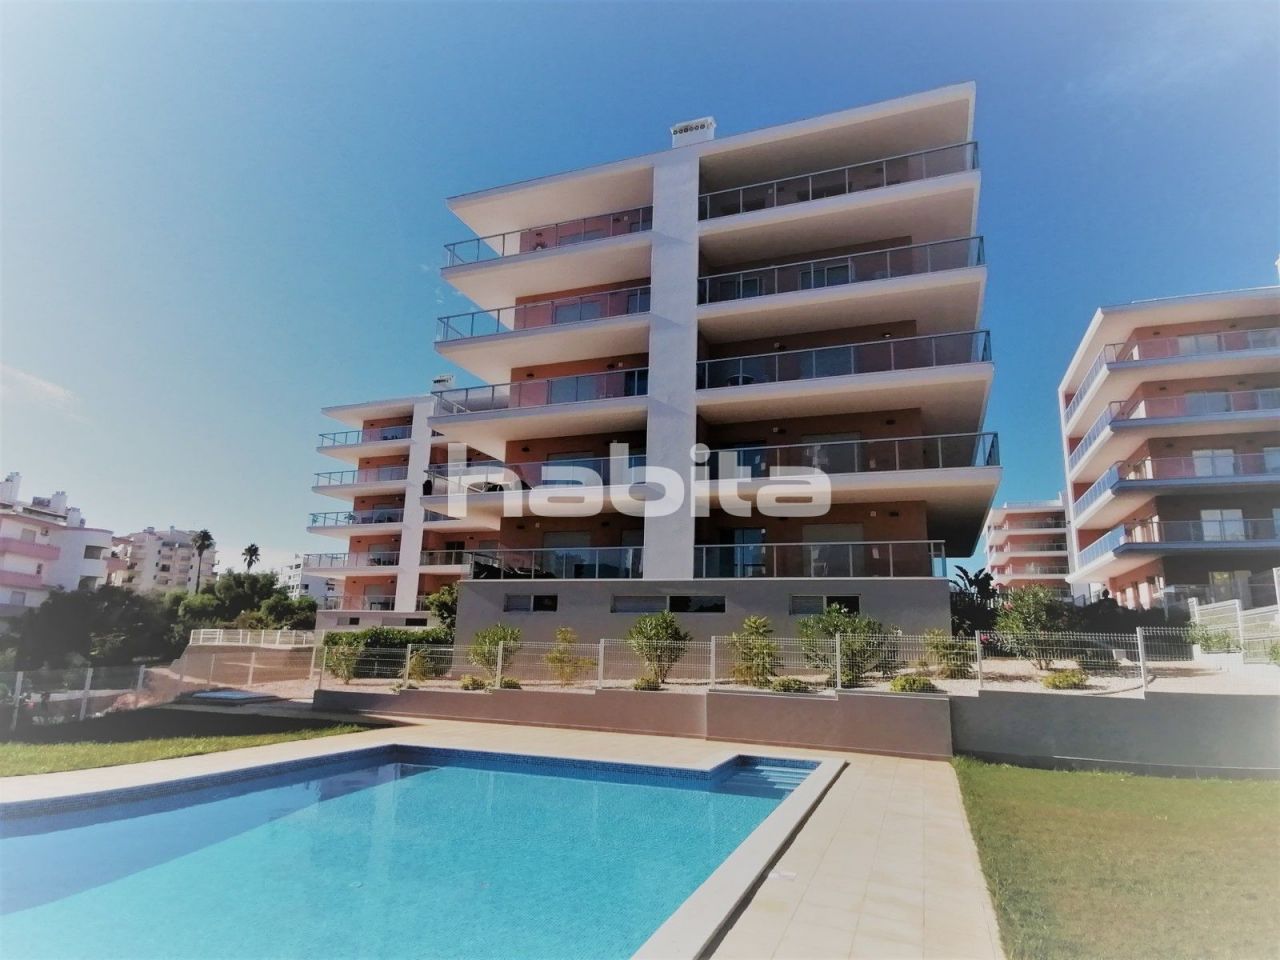 Apartment in Portimao, Portugal, 70.2 sq.m - picture 1